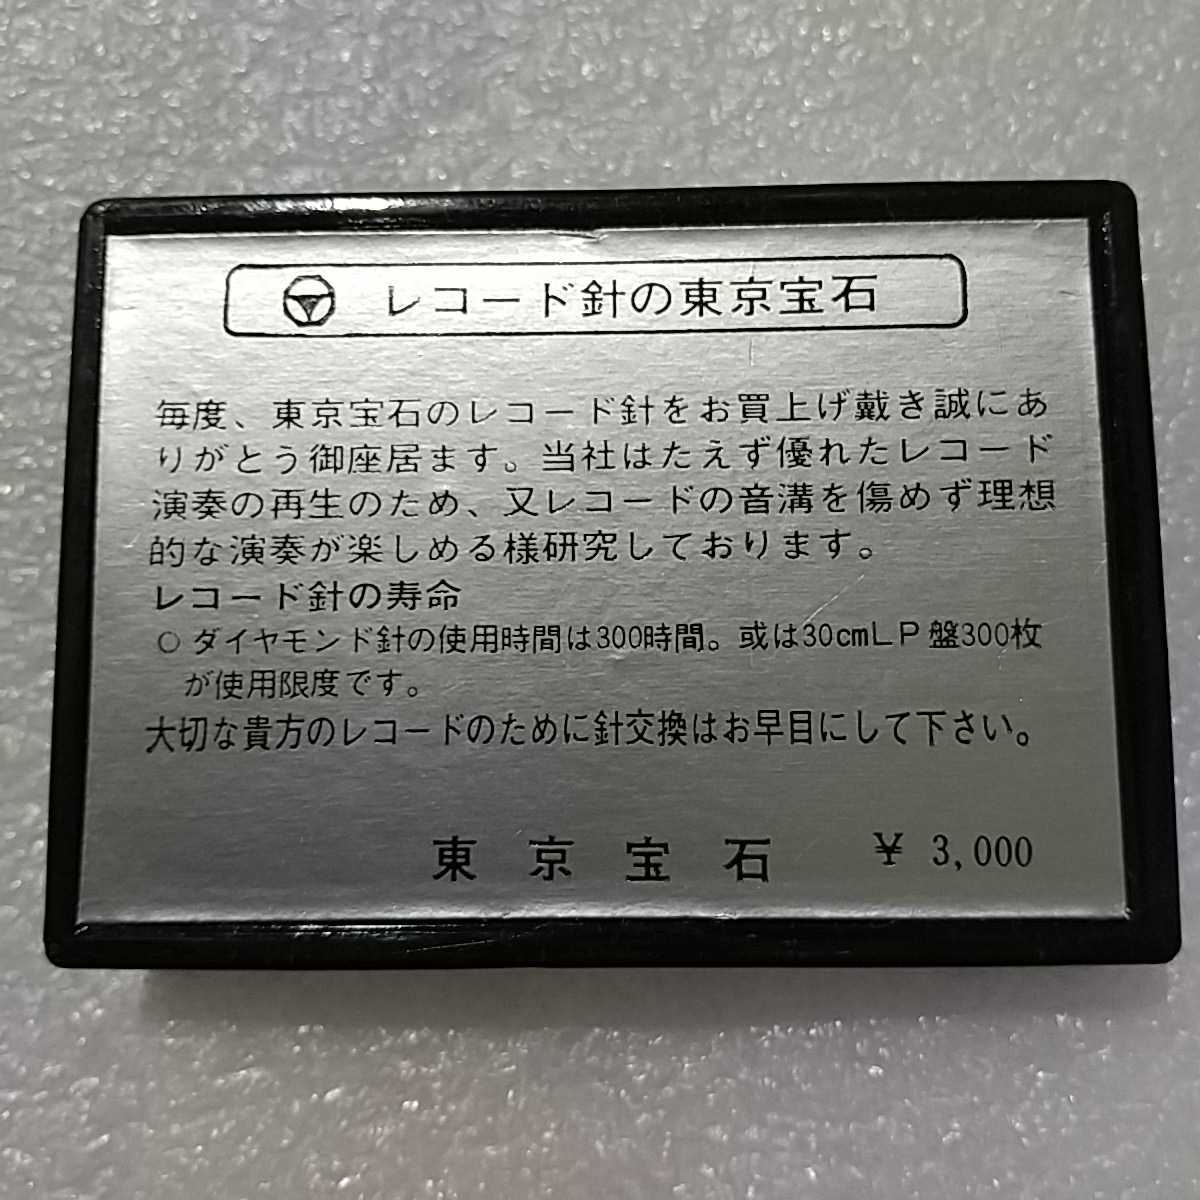 サンスイ用 レコード針 SN-26 レコード交換針 未使用 長期保管品 東京宝石 _画像2